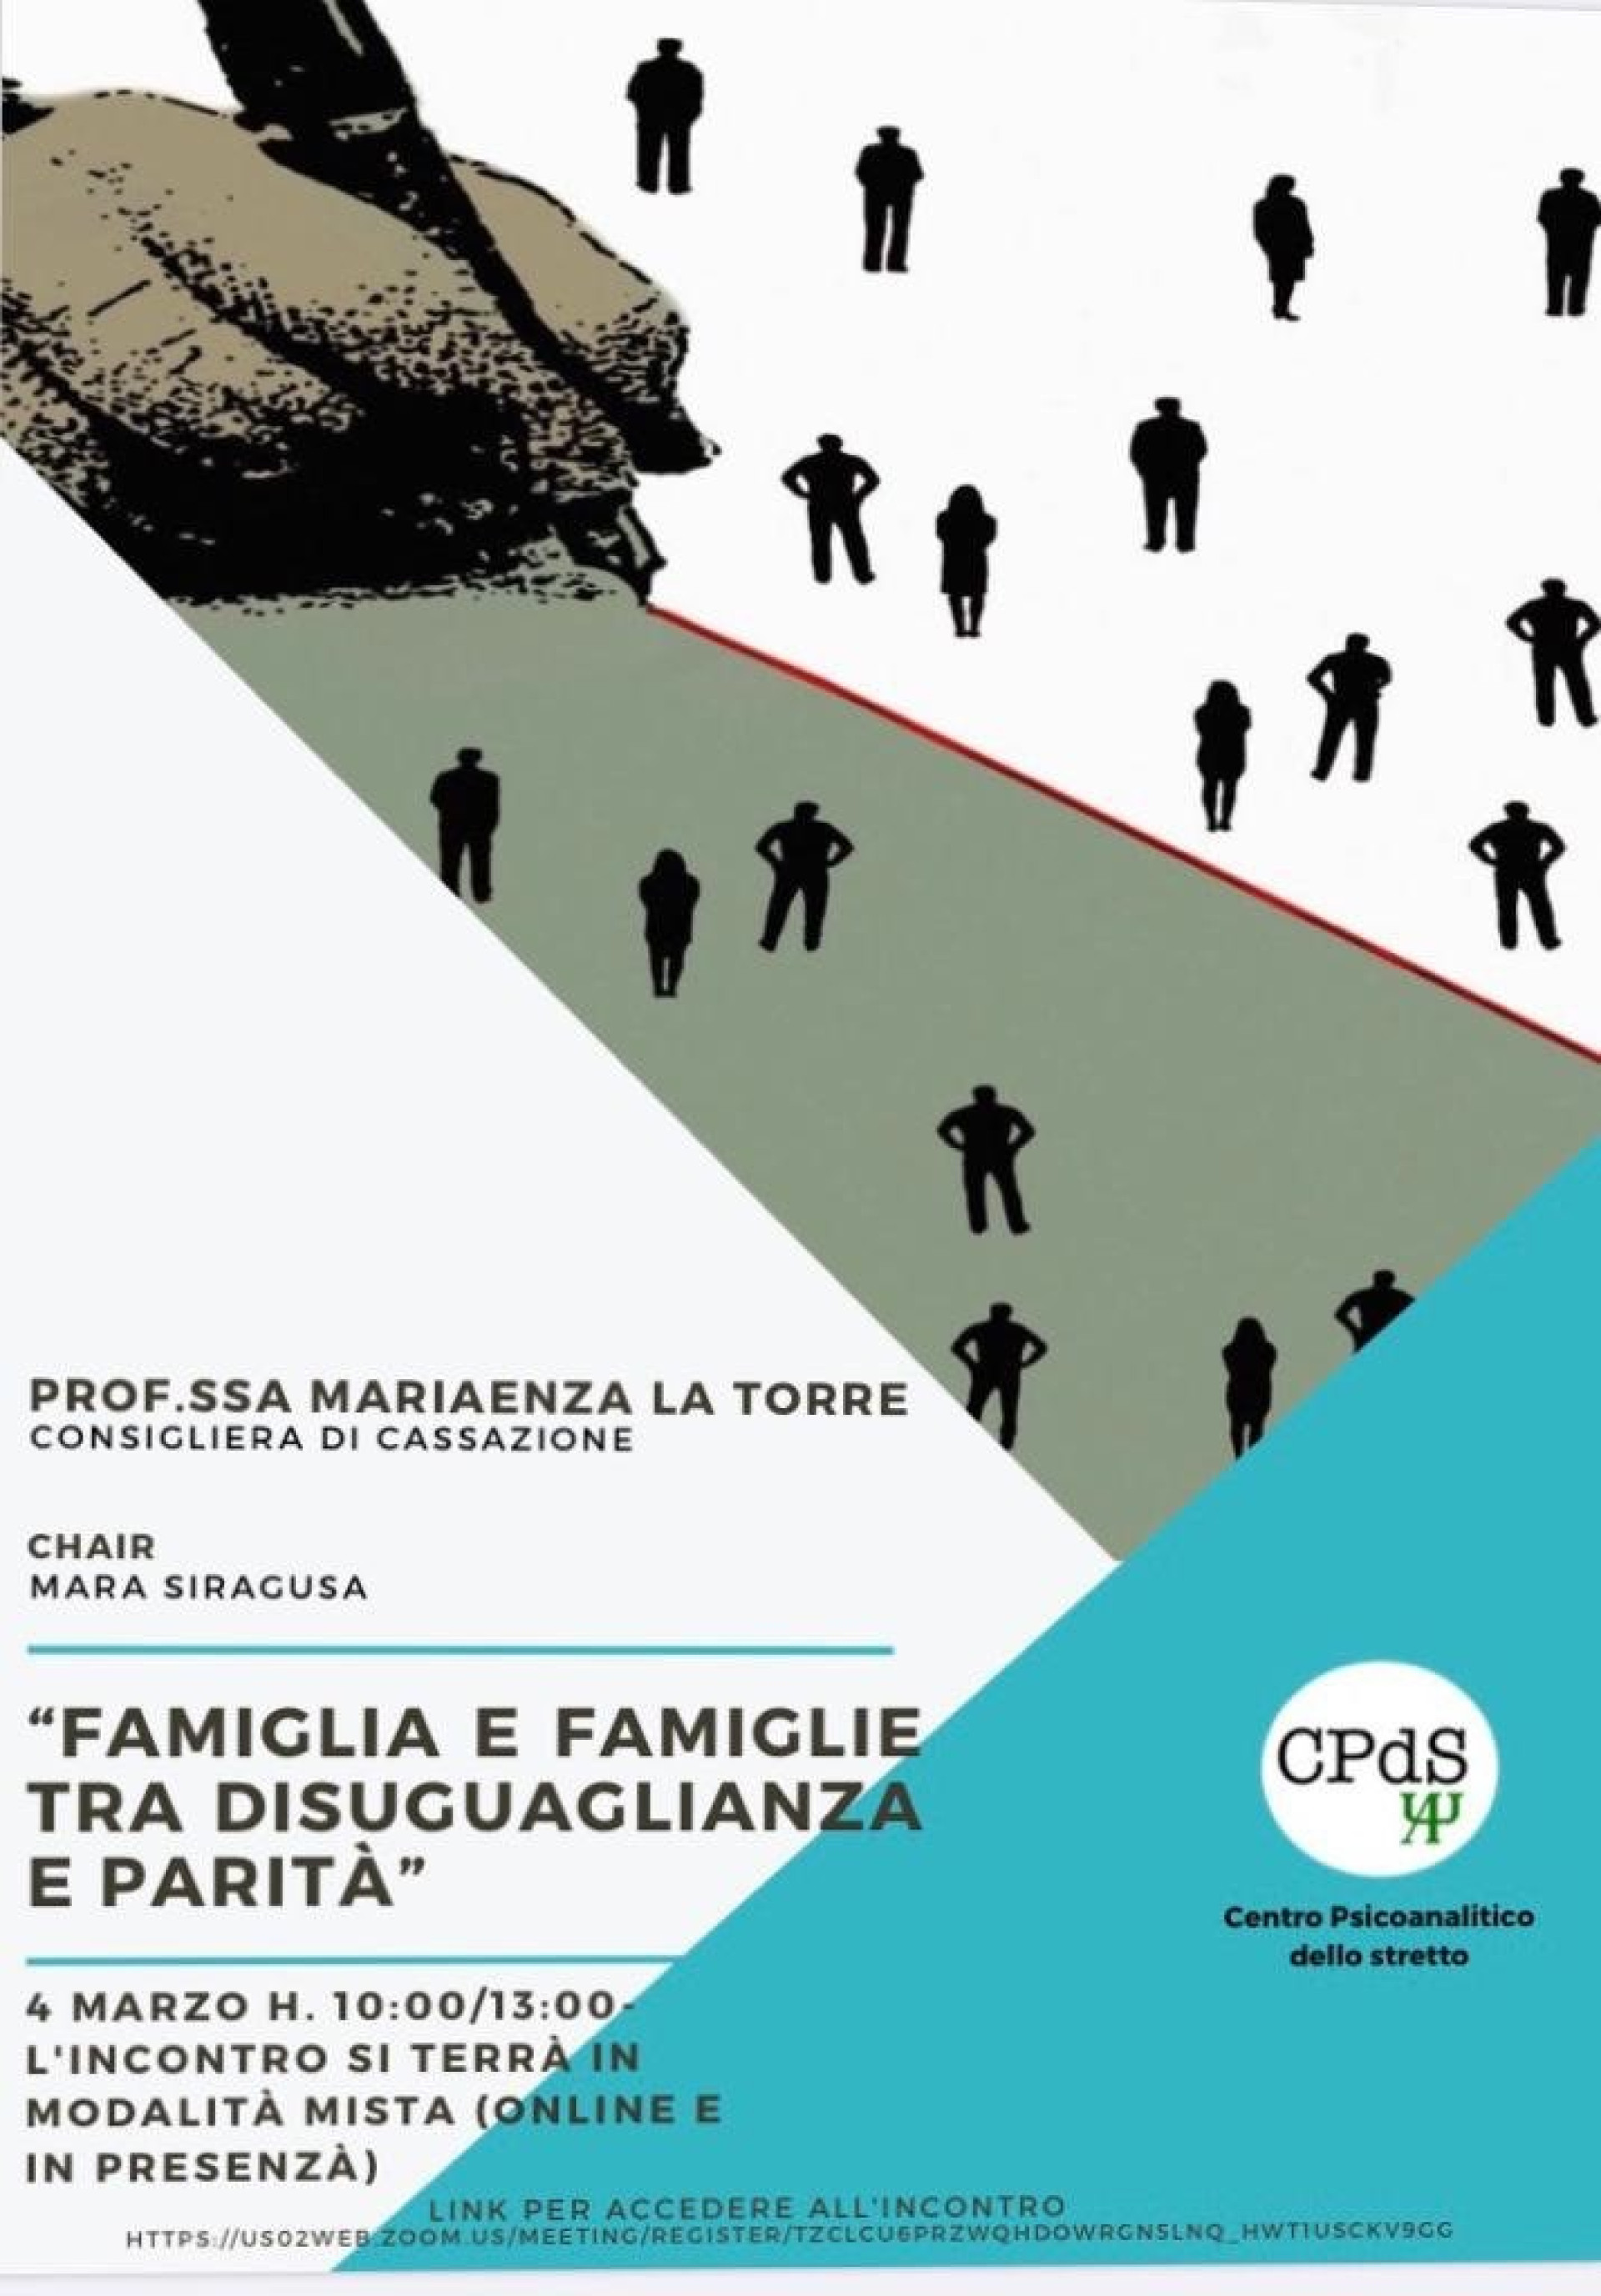 “Famiglia e famiglie tra disuguaglianza e parità”. Centro Psicoanalitico dello Stretto Francesco Siracusano.